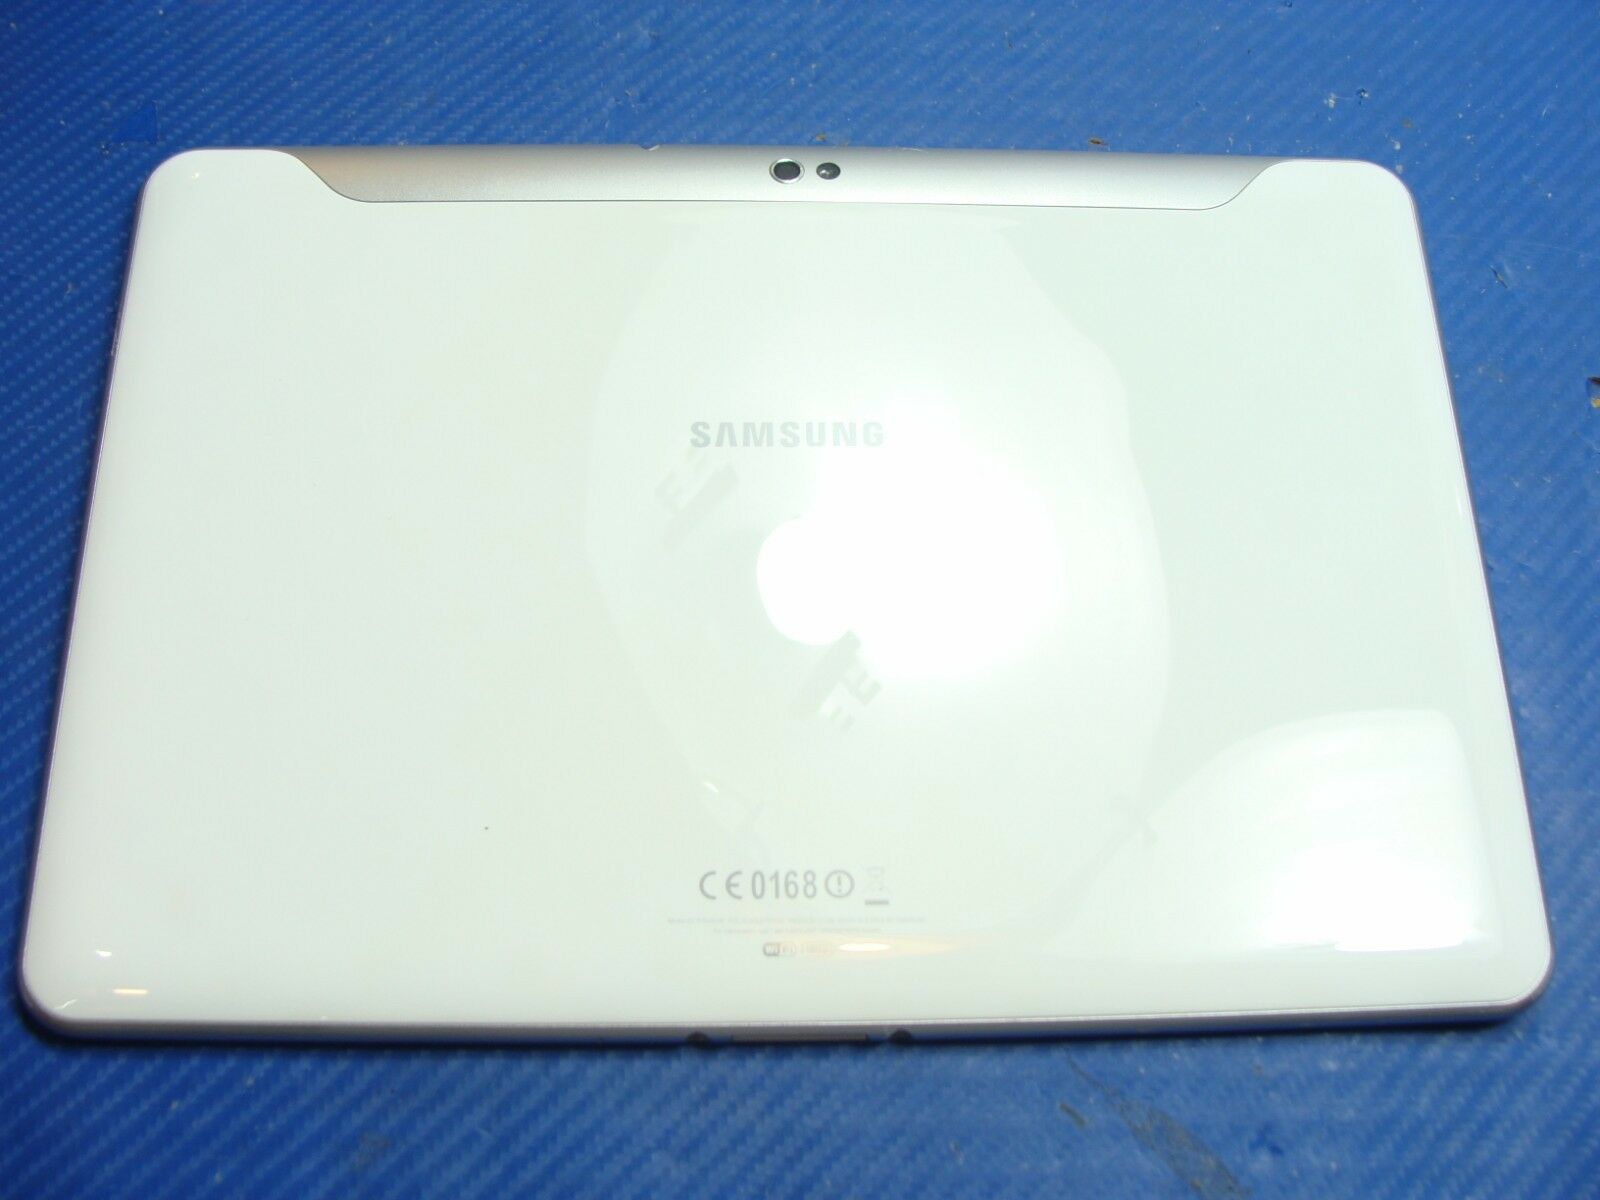 Samsung Galaxy Tab GT-P7510UW 10.1